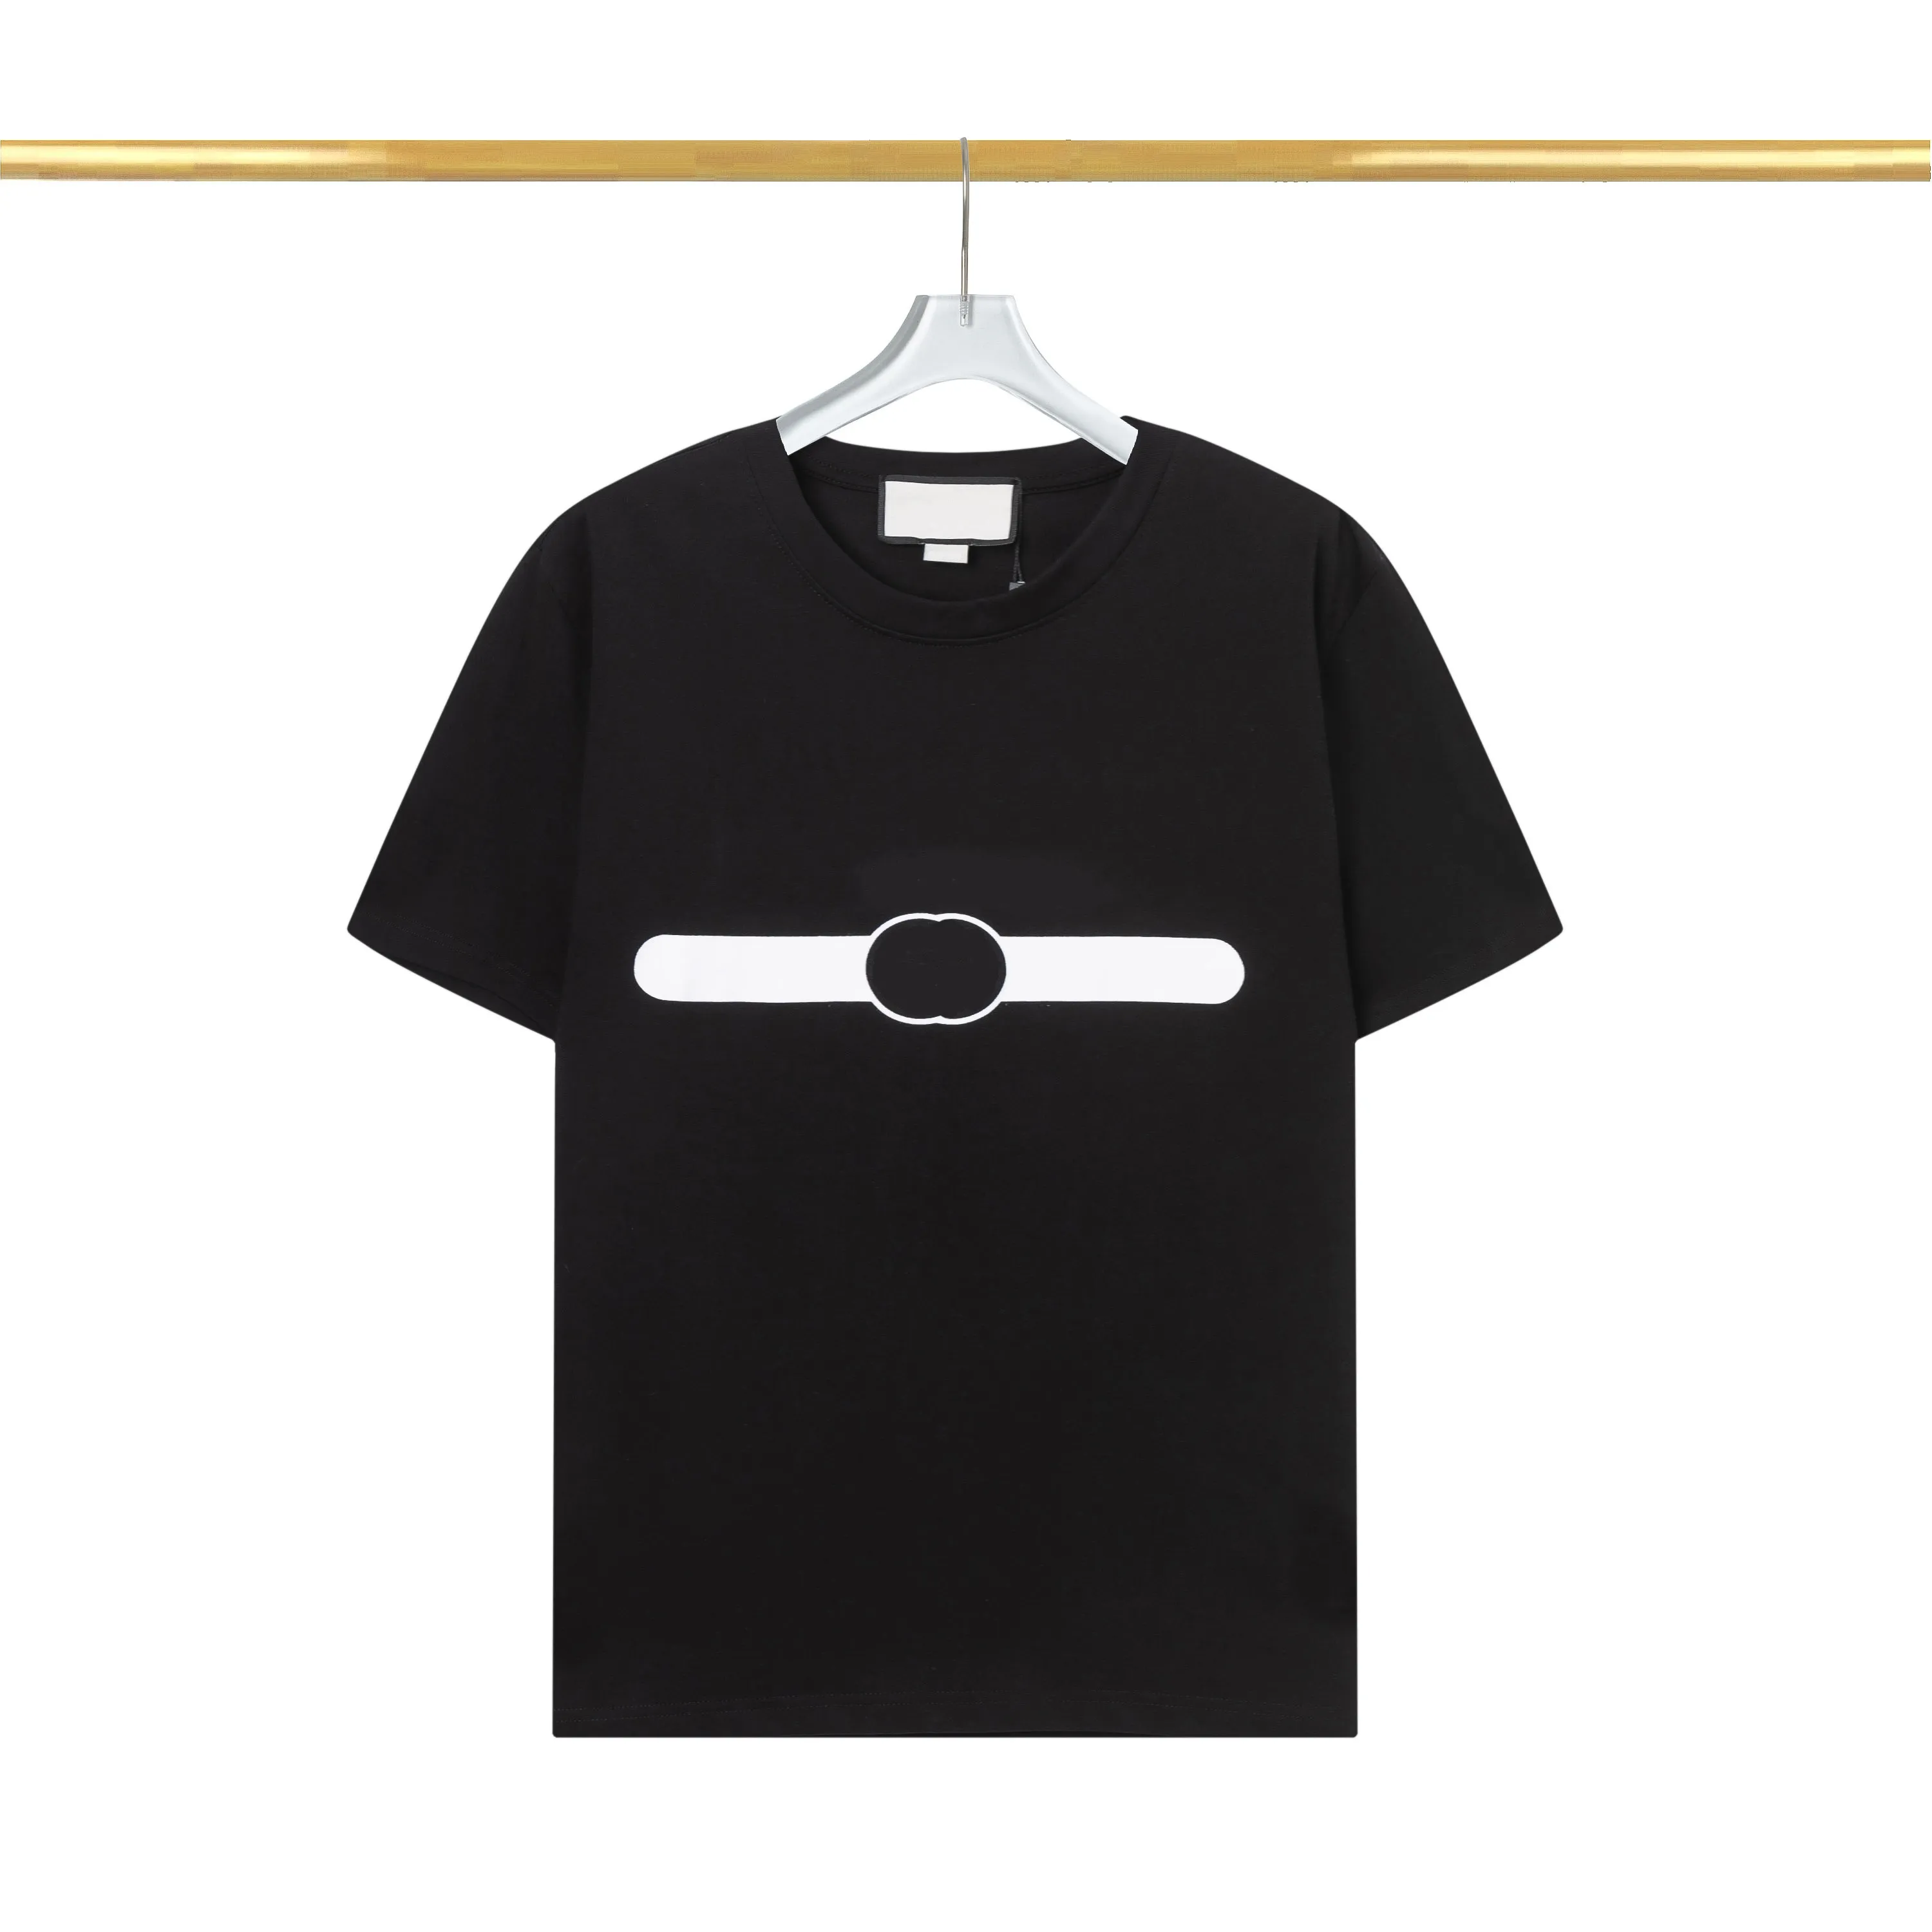 G marca de luxo t camisas para homens clássico designer feminino camiseta algodão tamanho euro t verão venda quente topo